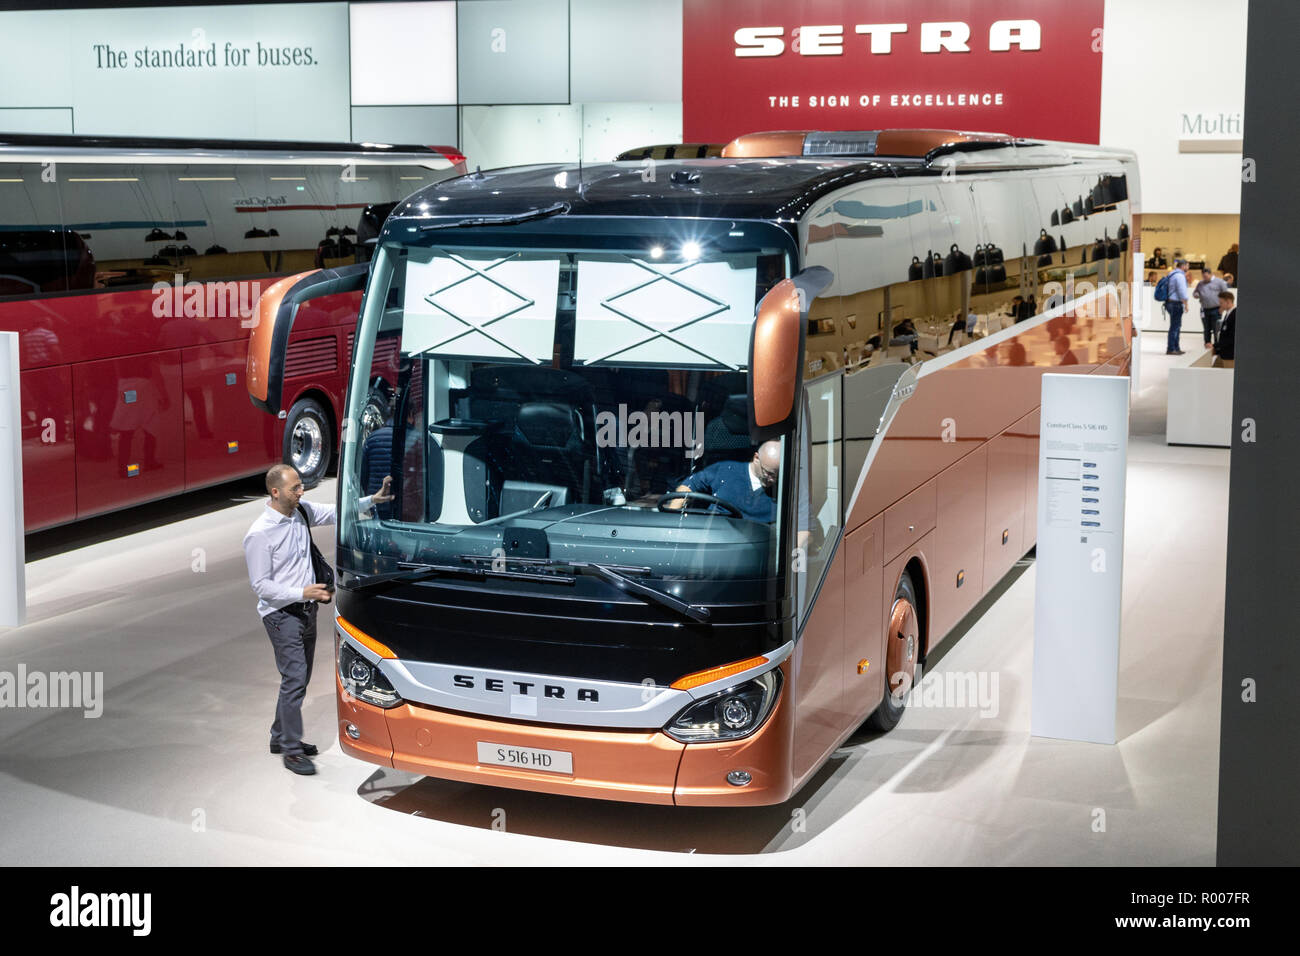 Hanovre, Allemagne - Sep 27, 2018 : Setra S 516 HD bus de tournée en vedette à l'IAA de Hanovre Véhicules Utilitaires Salon de l'automobile. Banque D'Images